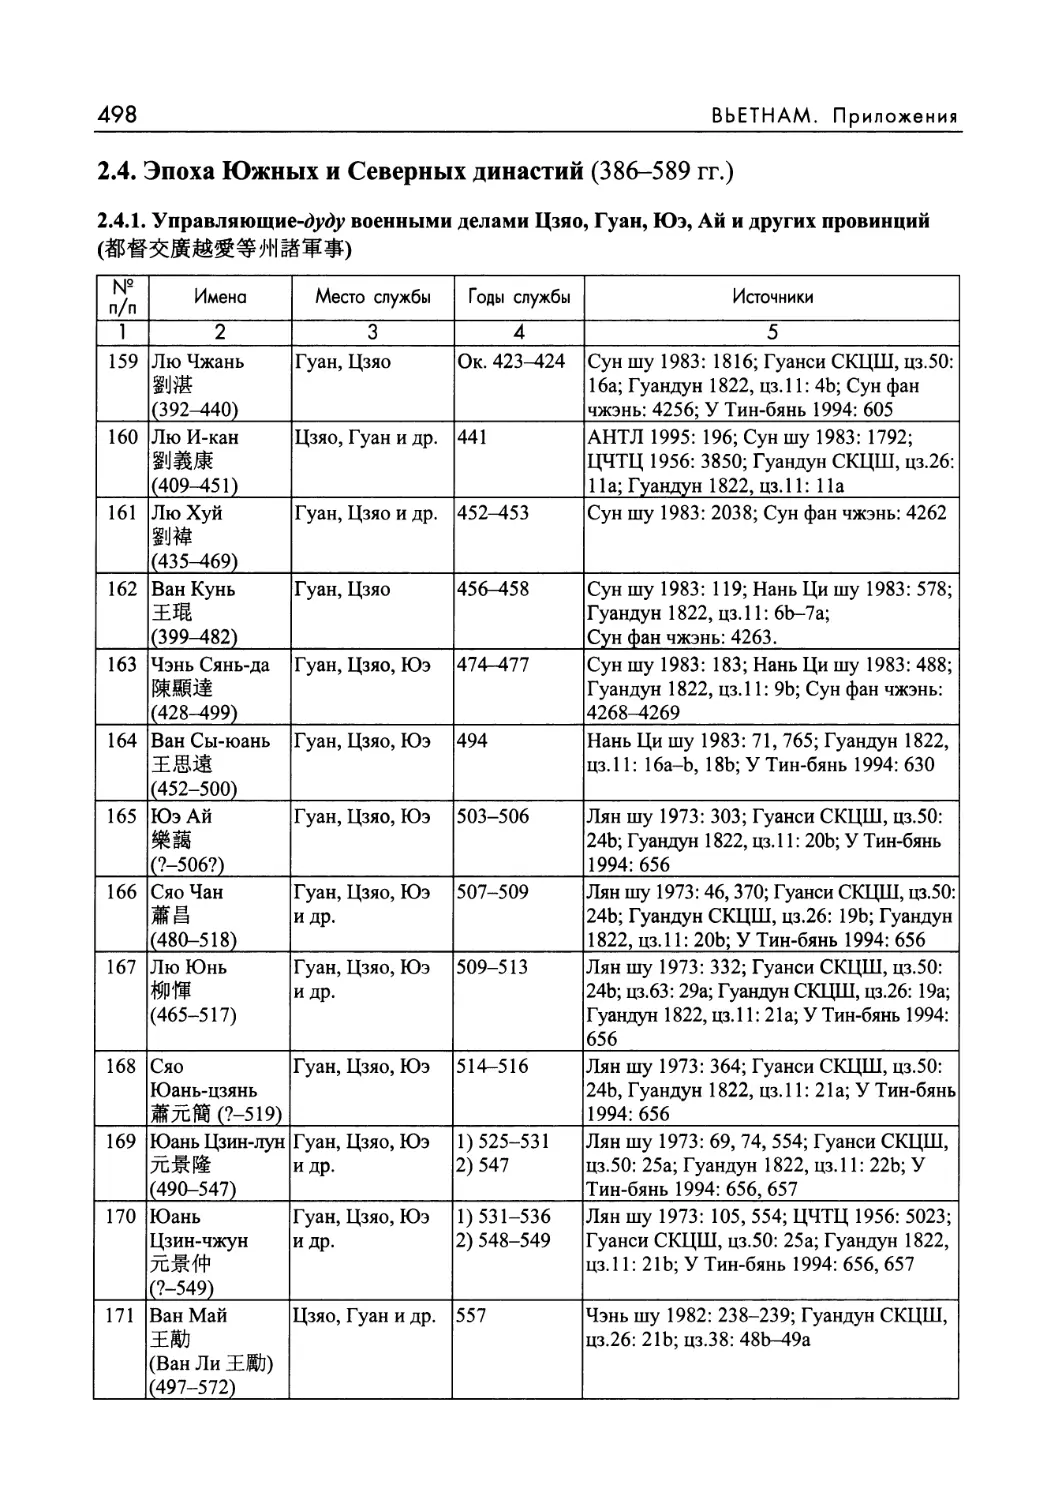 2.4.1. Управляющие-дуду военными делами Цзяо, Гуан, Юэ, Аи и других провинций